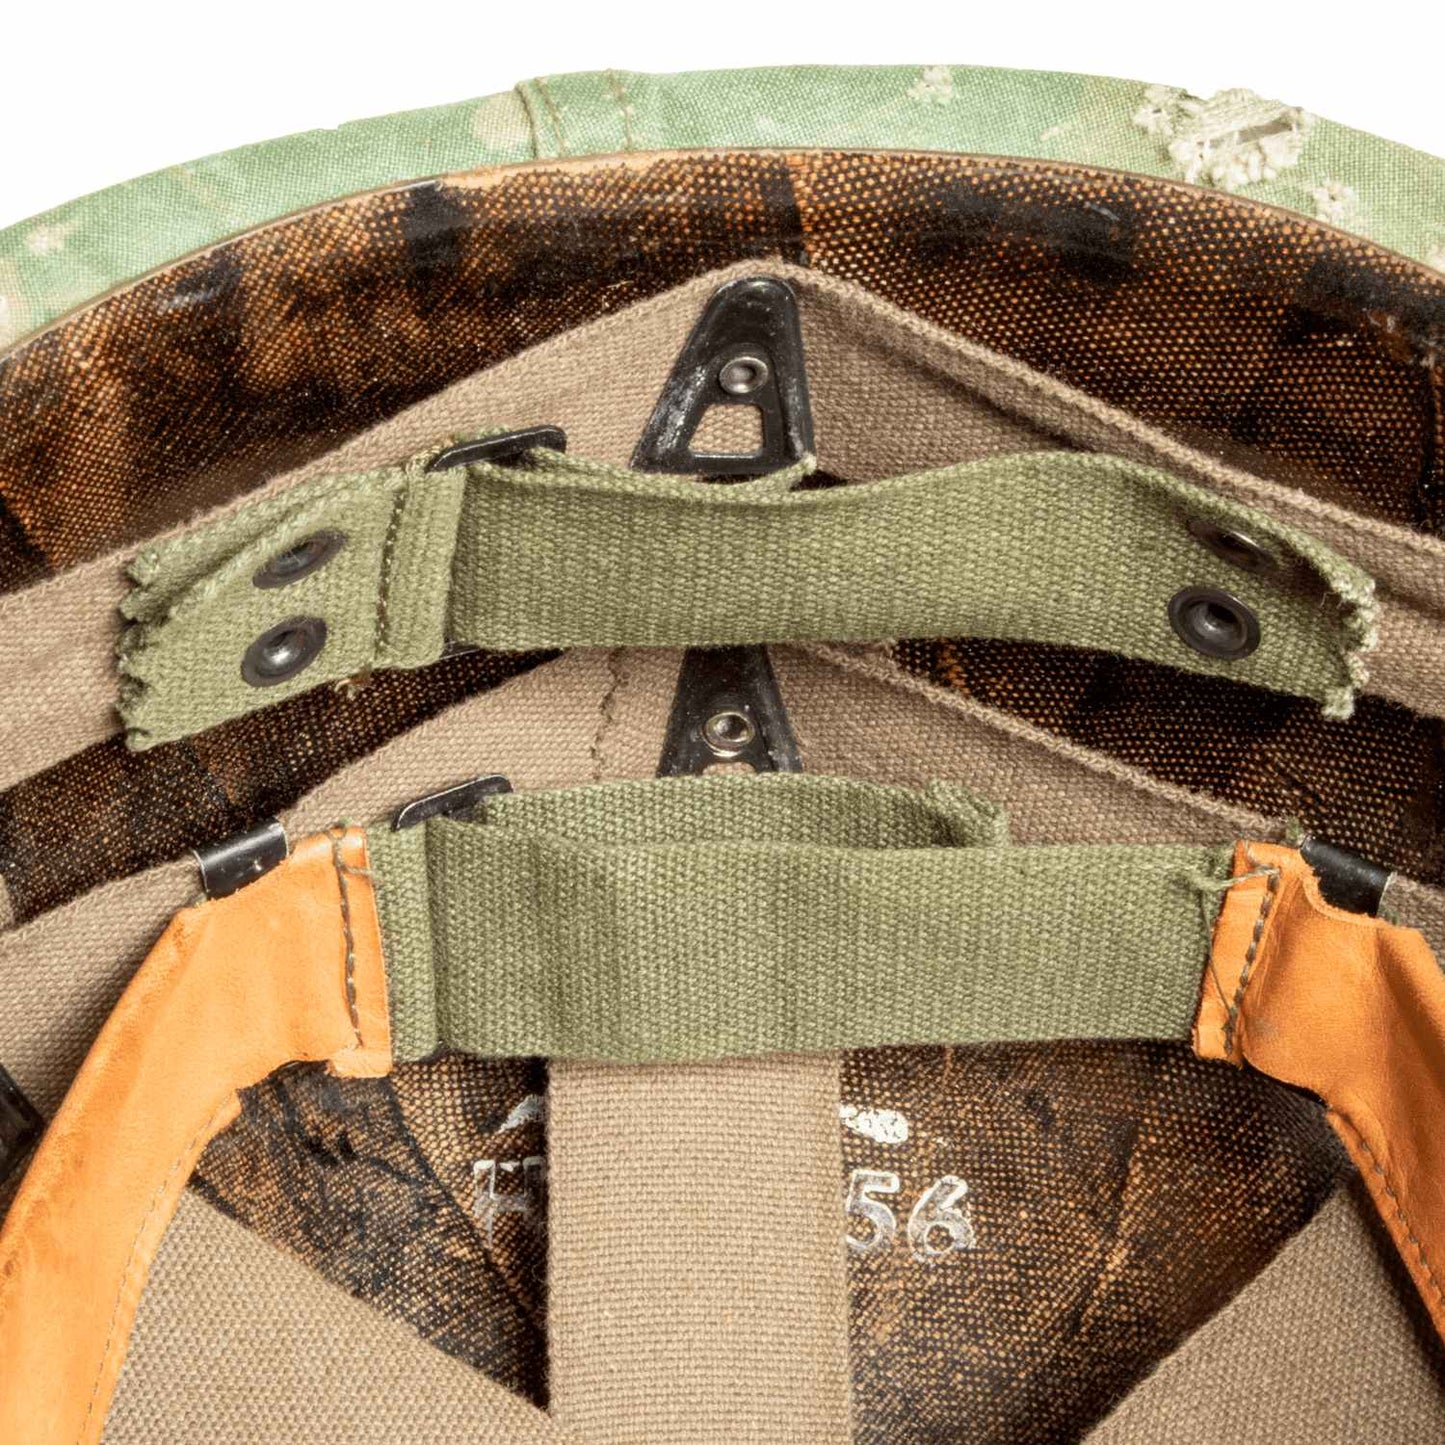 Casque Complet Vietnam Parachutiste Edition Limitée précoce vue du neck band